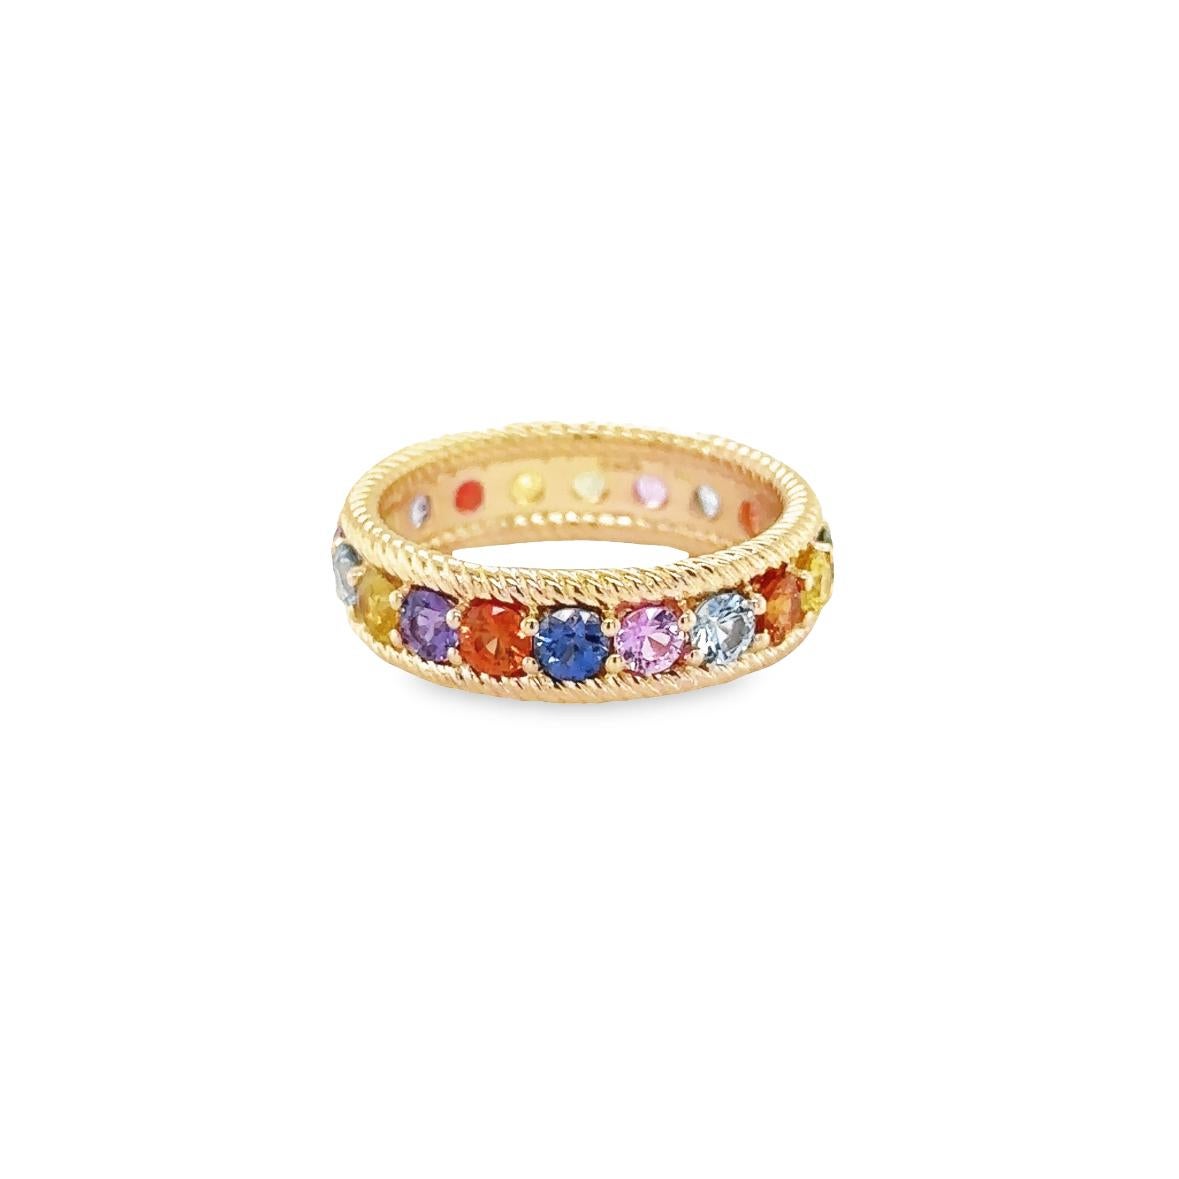 RIAD Ring aus Roségold 18Kt 5,78 gr mit farbigen Saphiren 2,87 ct.

Im Jahr 2023 jährt sich die Gründung der VITALE 1913 zum 110. Mal, wir bieten Ihnen eine personalisierte Gravur mit Initialen als einzigartiges Geschenk aus Monaco! Perfekt für